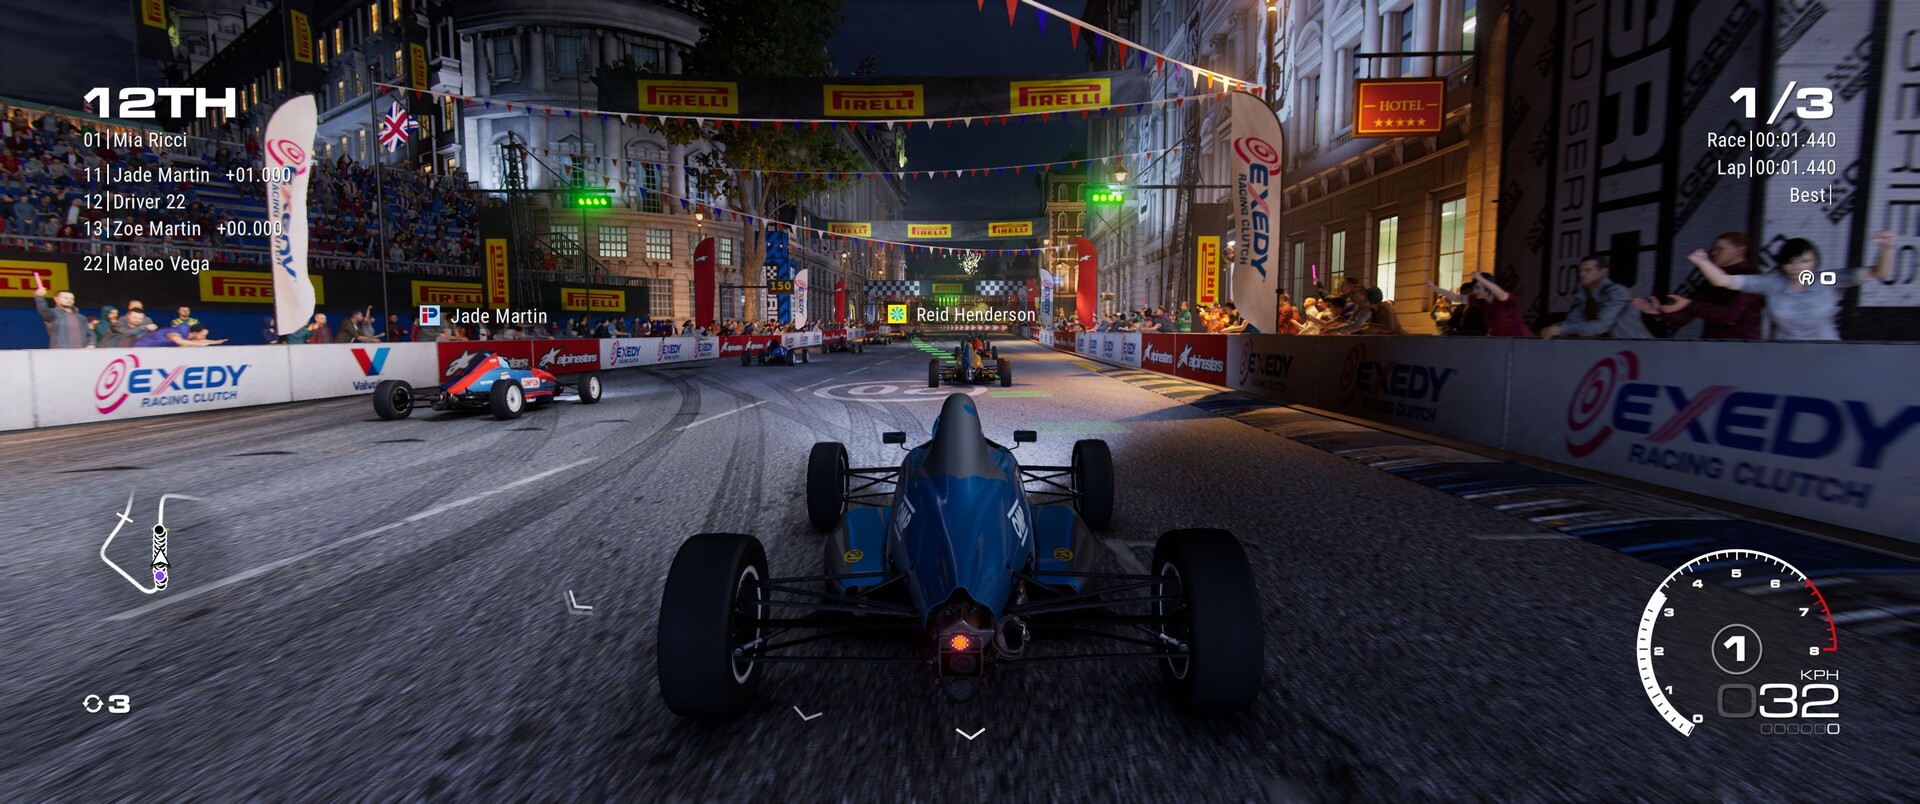 Grid Legends: lançamento do jogo de corrida tem data marcada - Motor Show